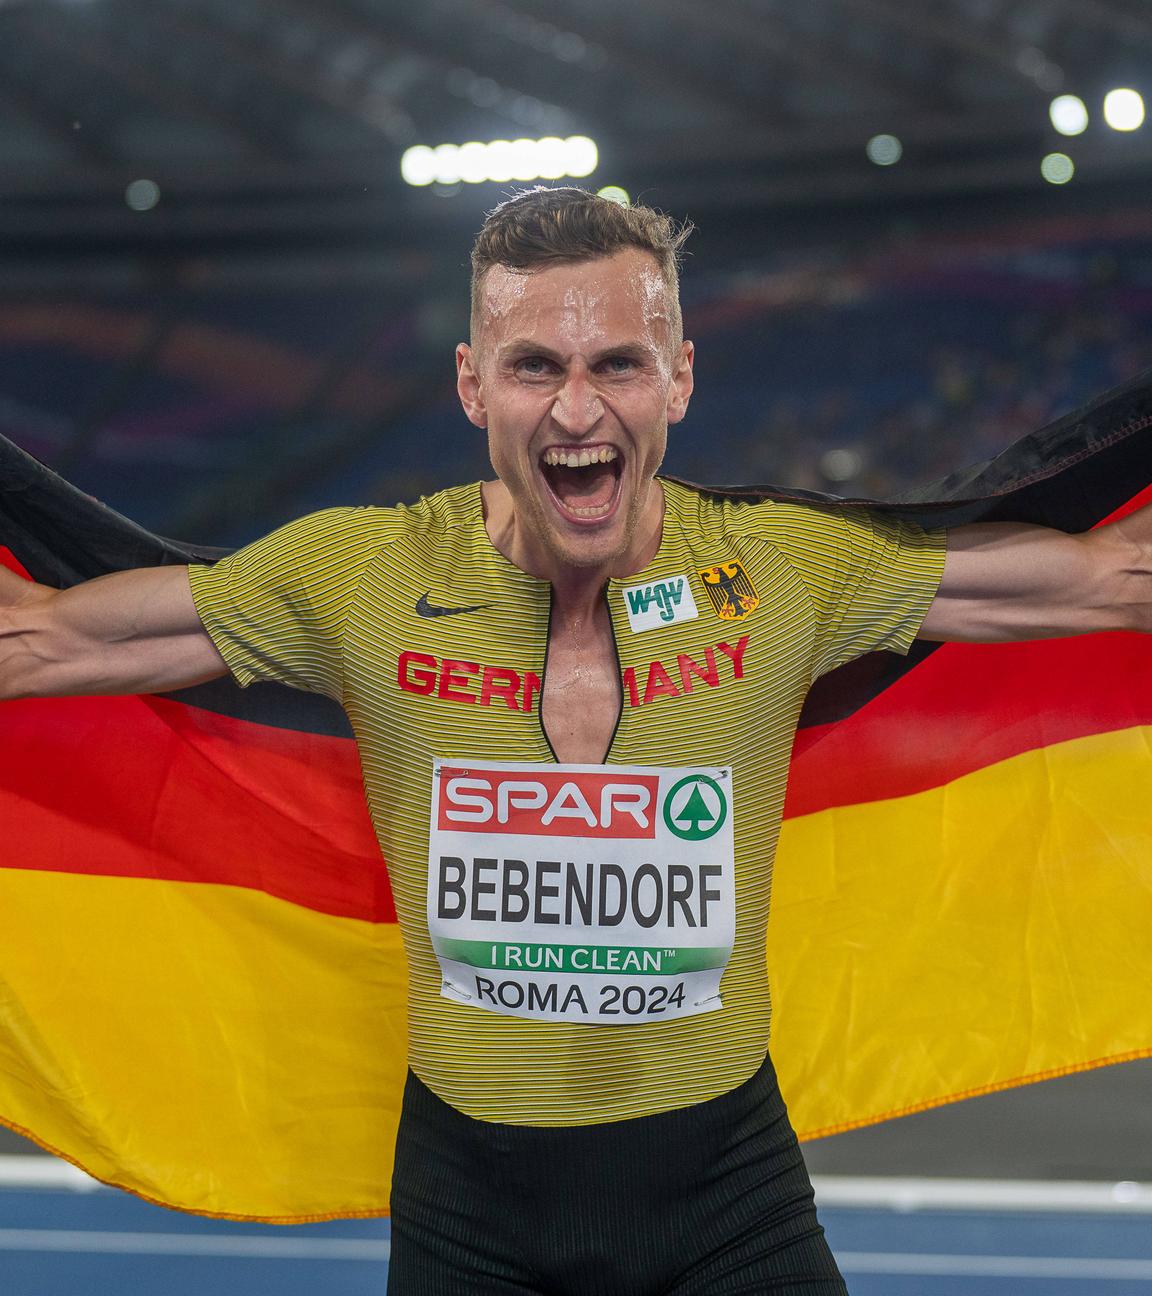 Karl Bebendorf feiert seinen dritten Platz bei dem 3000m Hindernis bei der Europameisterschaft.